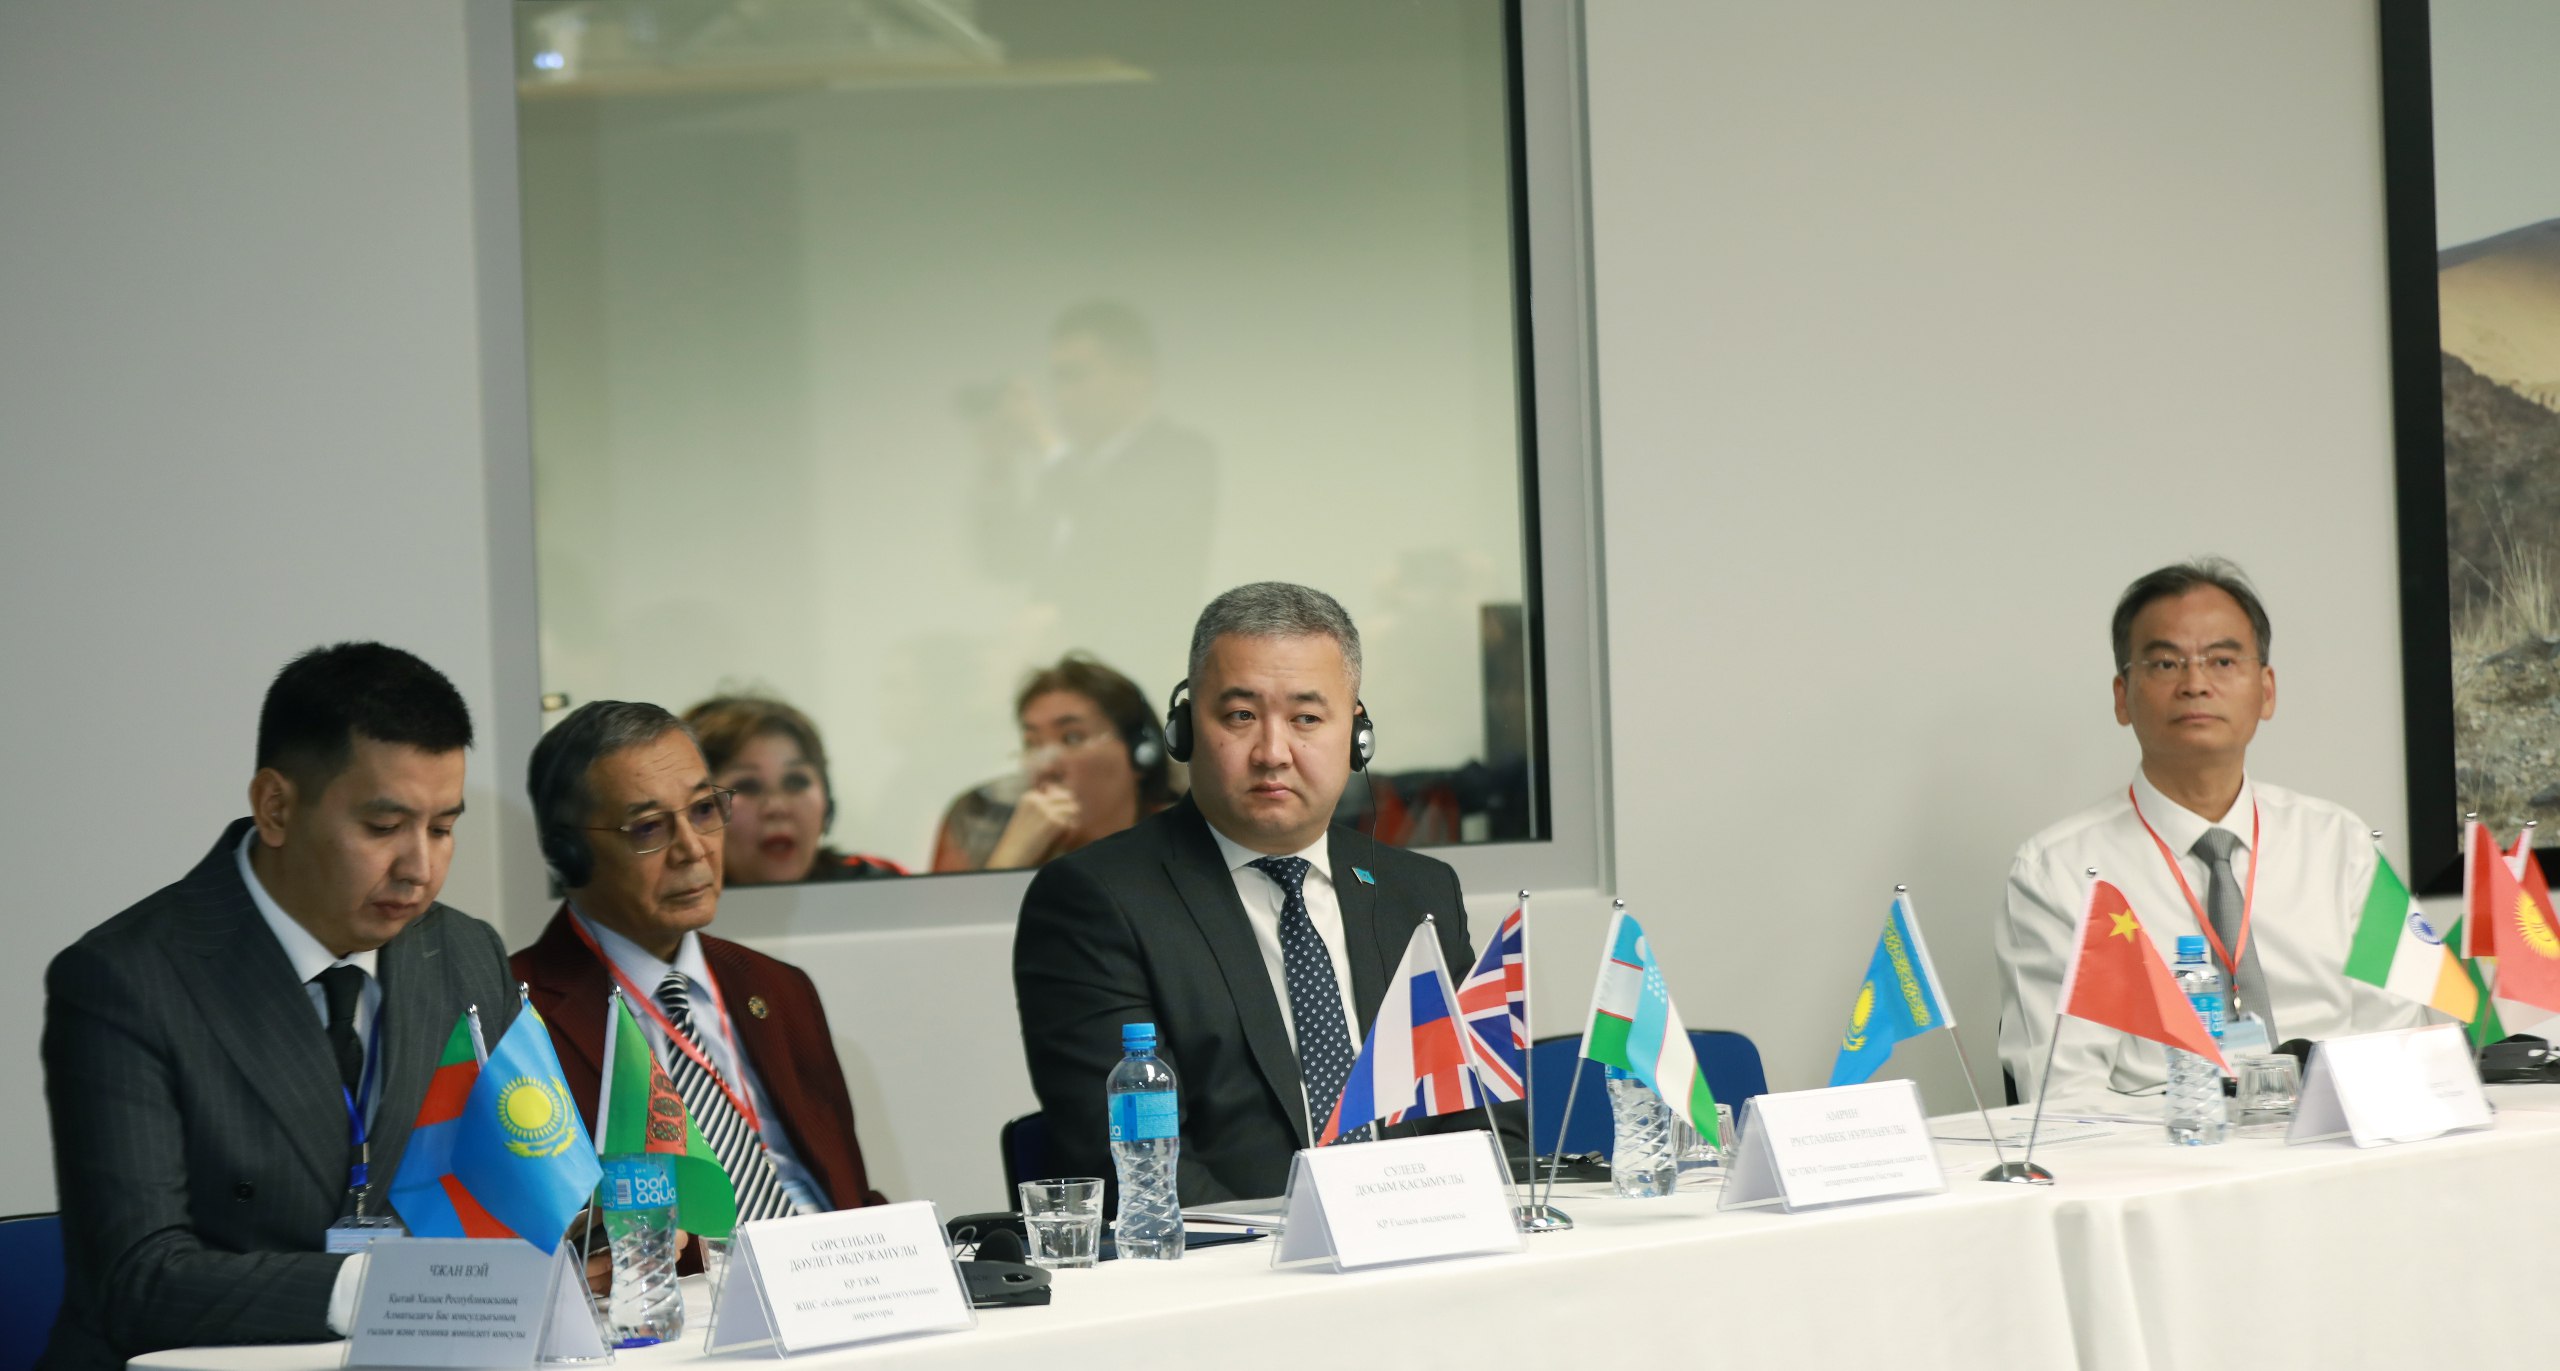 В Алматы состоялось открытие XI Казахстанско-Китайского международного симпозиума по вопросам прогноза землетрясений